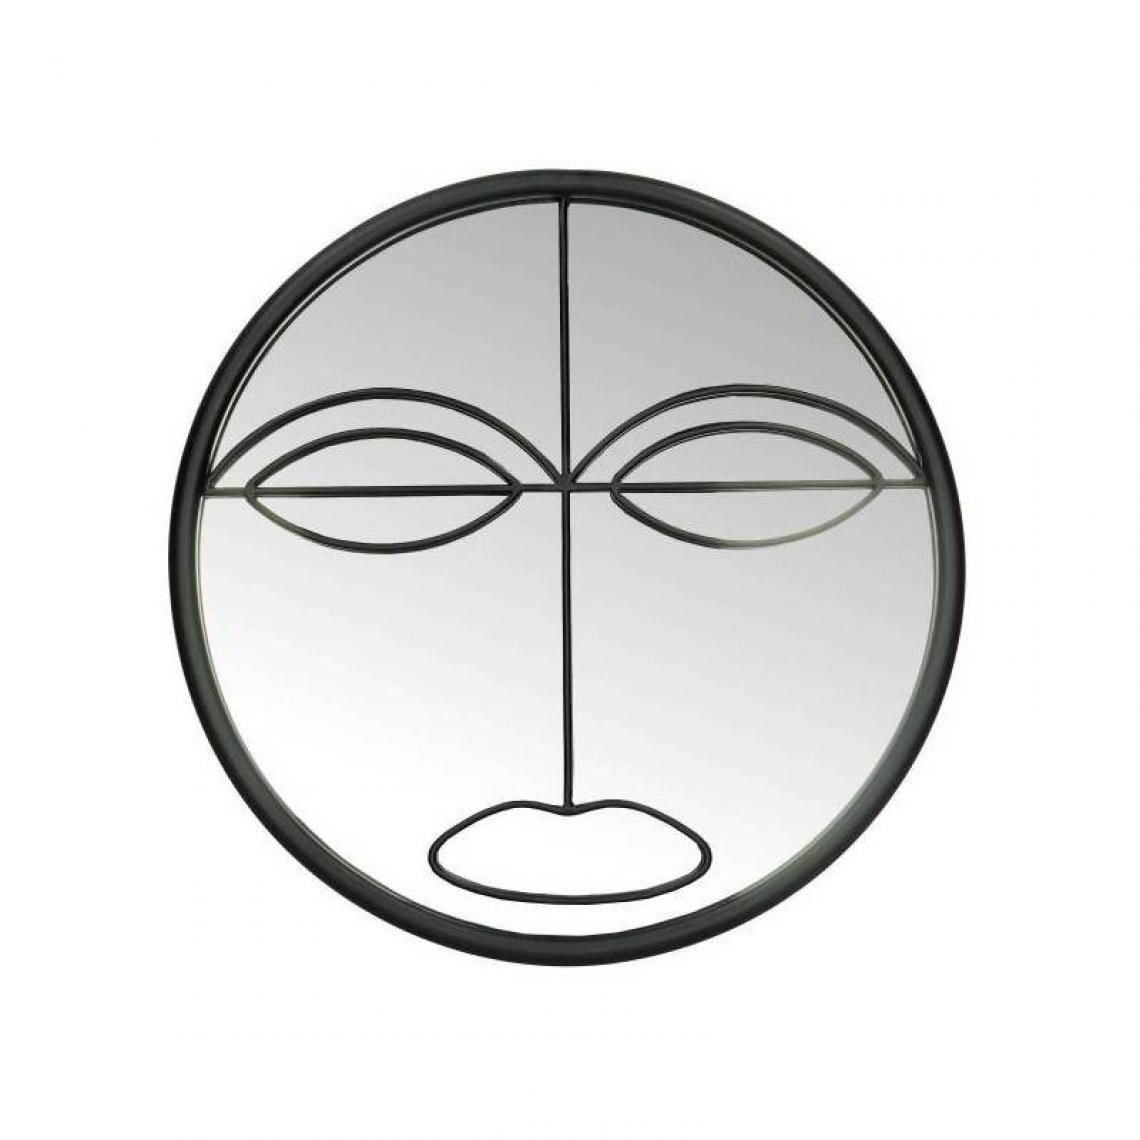 L'Héritier Du Temps - Miroir Face Noir Décoration Glace Murale Ronde en Métal 3x37x37cm - Miroirs